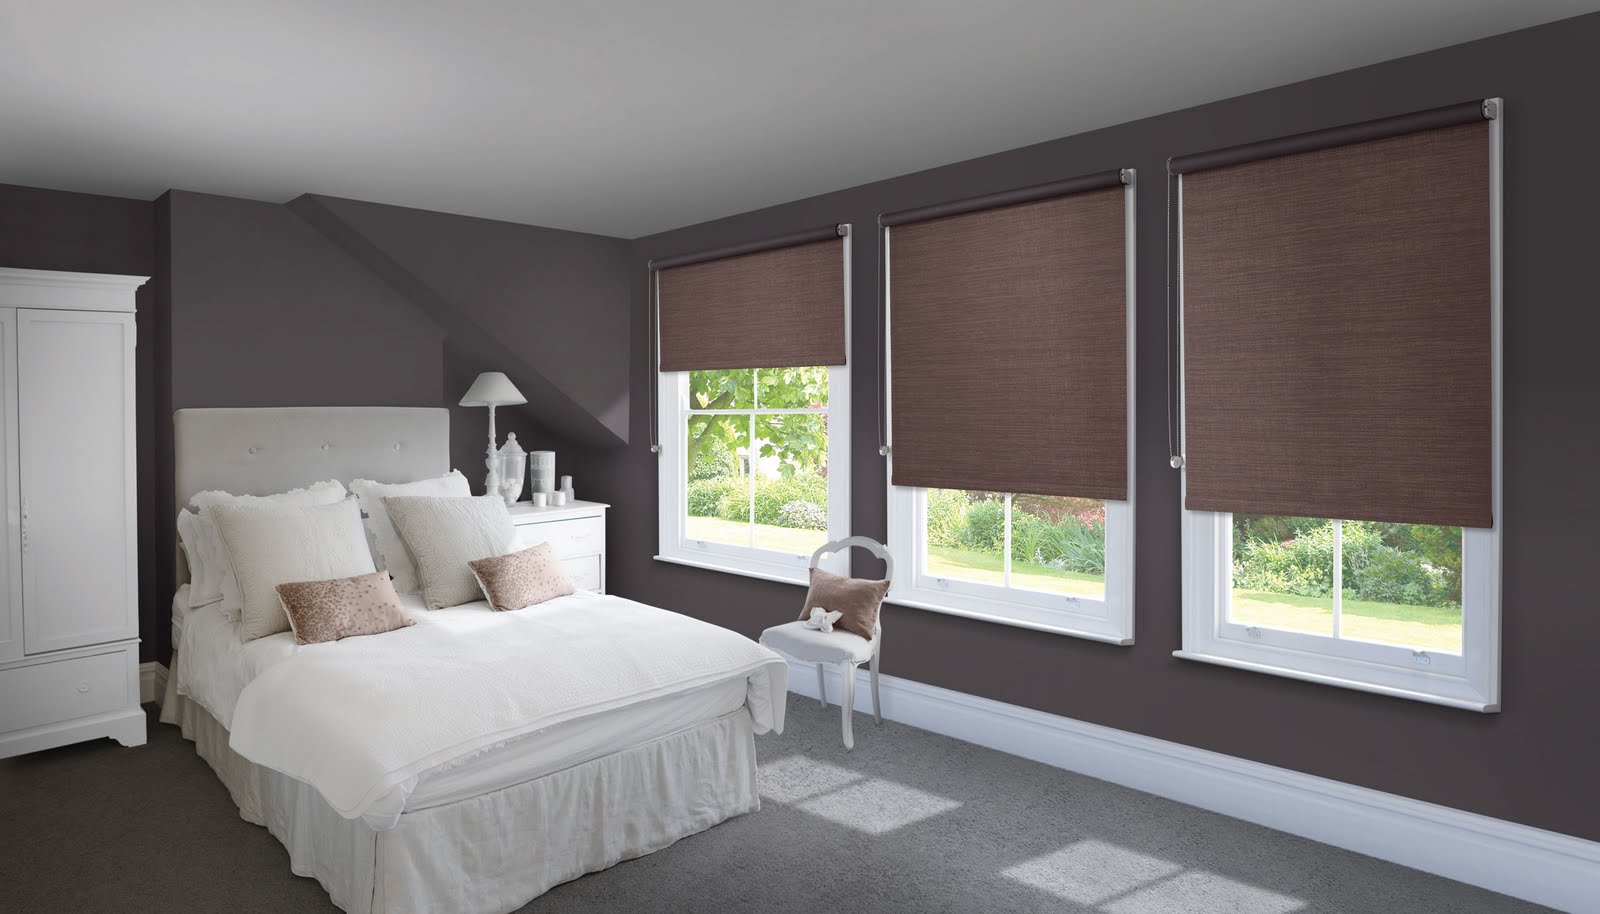 Rèm cuốn có khả năng ngăn chặn hoàn toản ánh sáng bên ngoải chiếu vào phòng, cản nhiệt và tia UV có hại cho sức khỏe